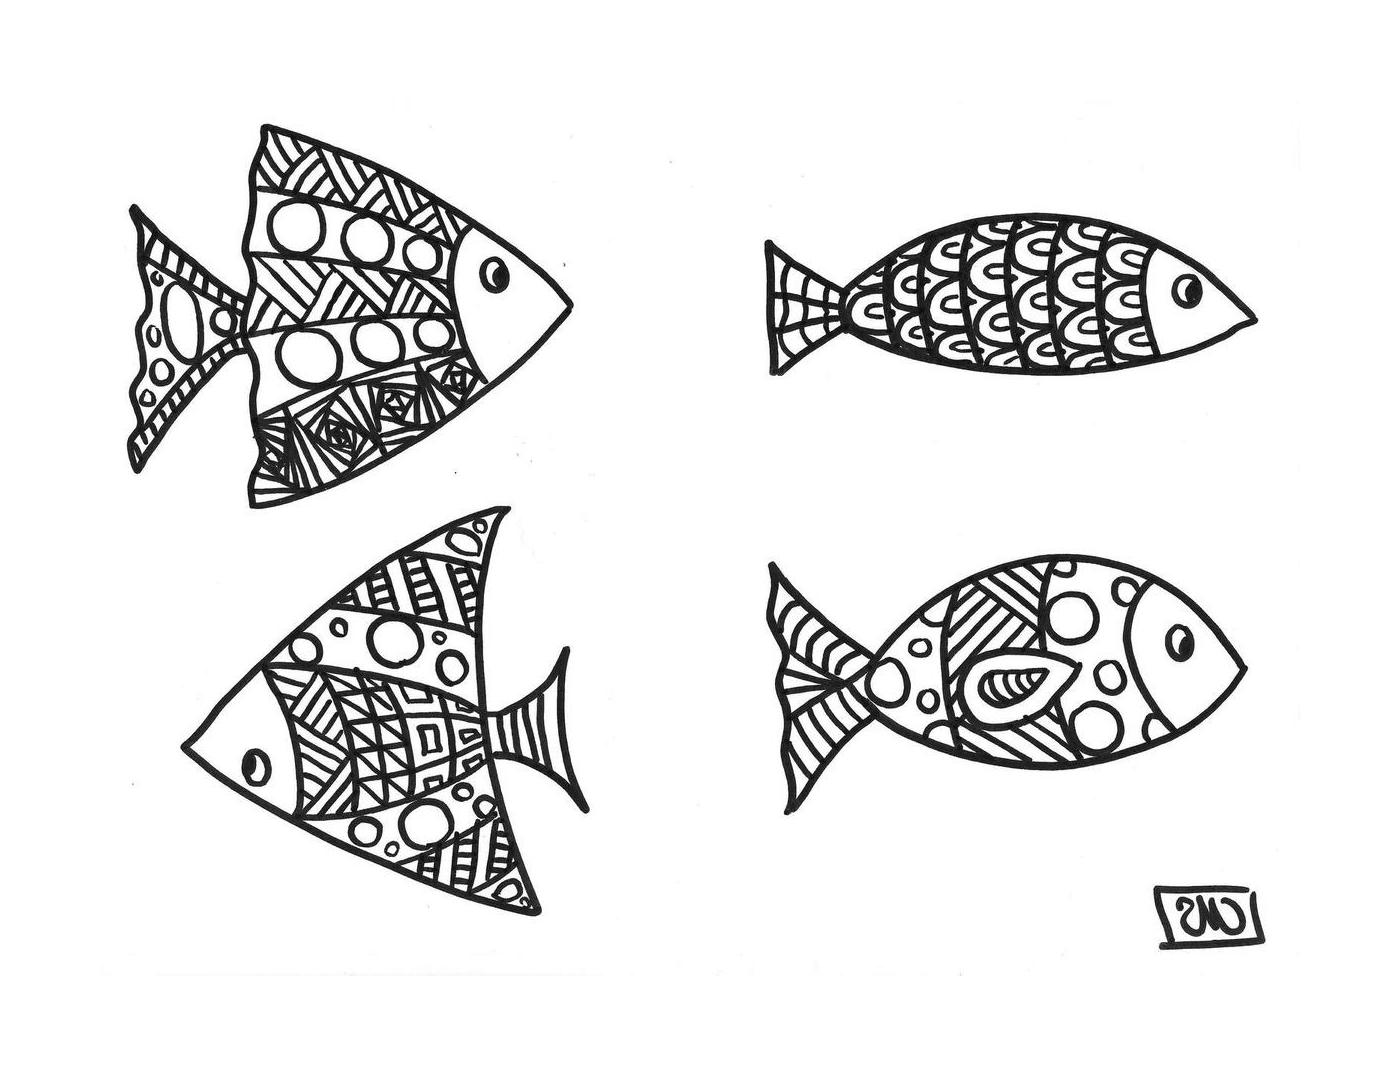   Quatre poissons avec des motifs uniques 